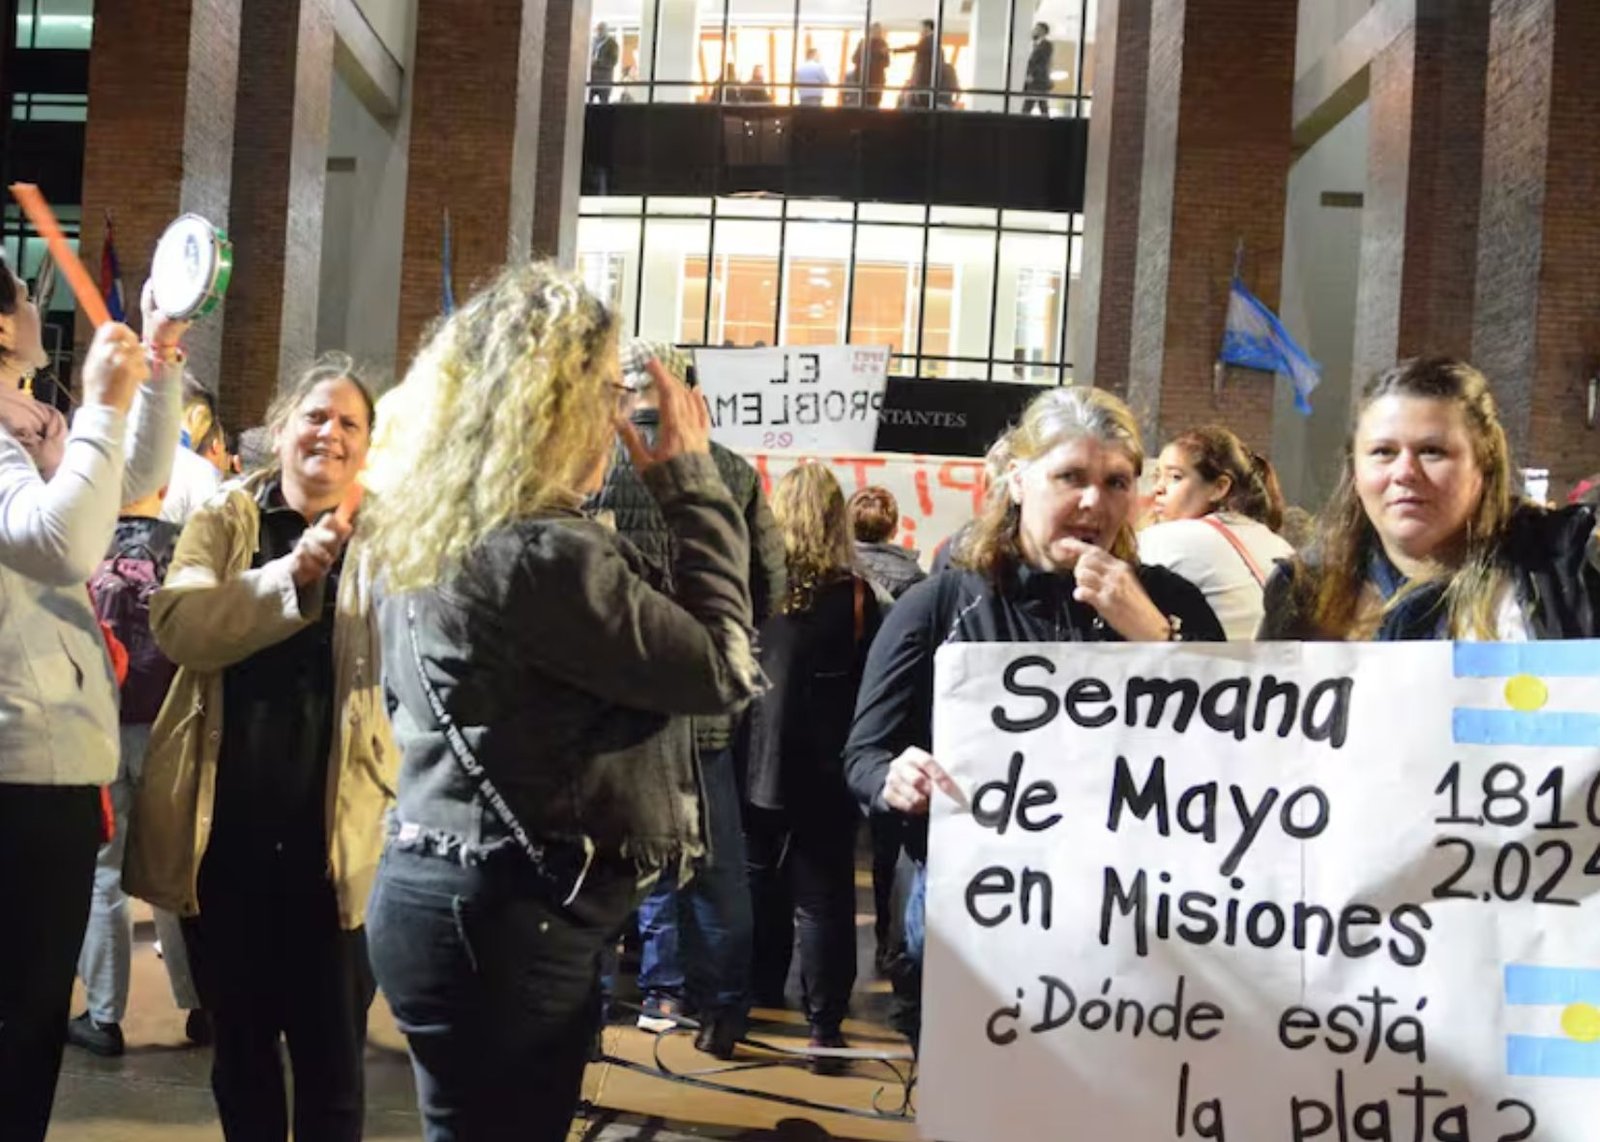 Protestas en Misiones. El Gobierno se despega del conflicto: “Tiene que buscarle una solución la provincia”